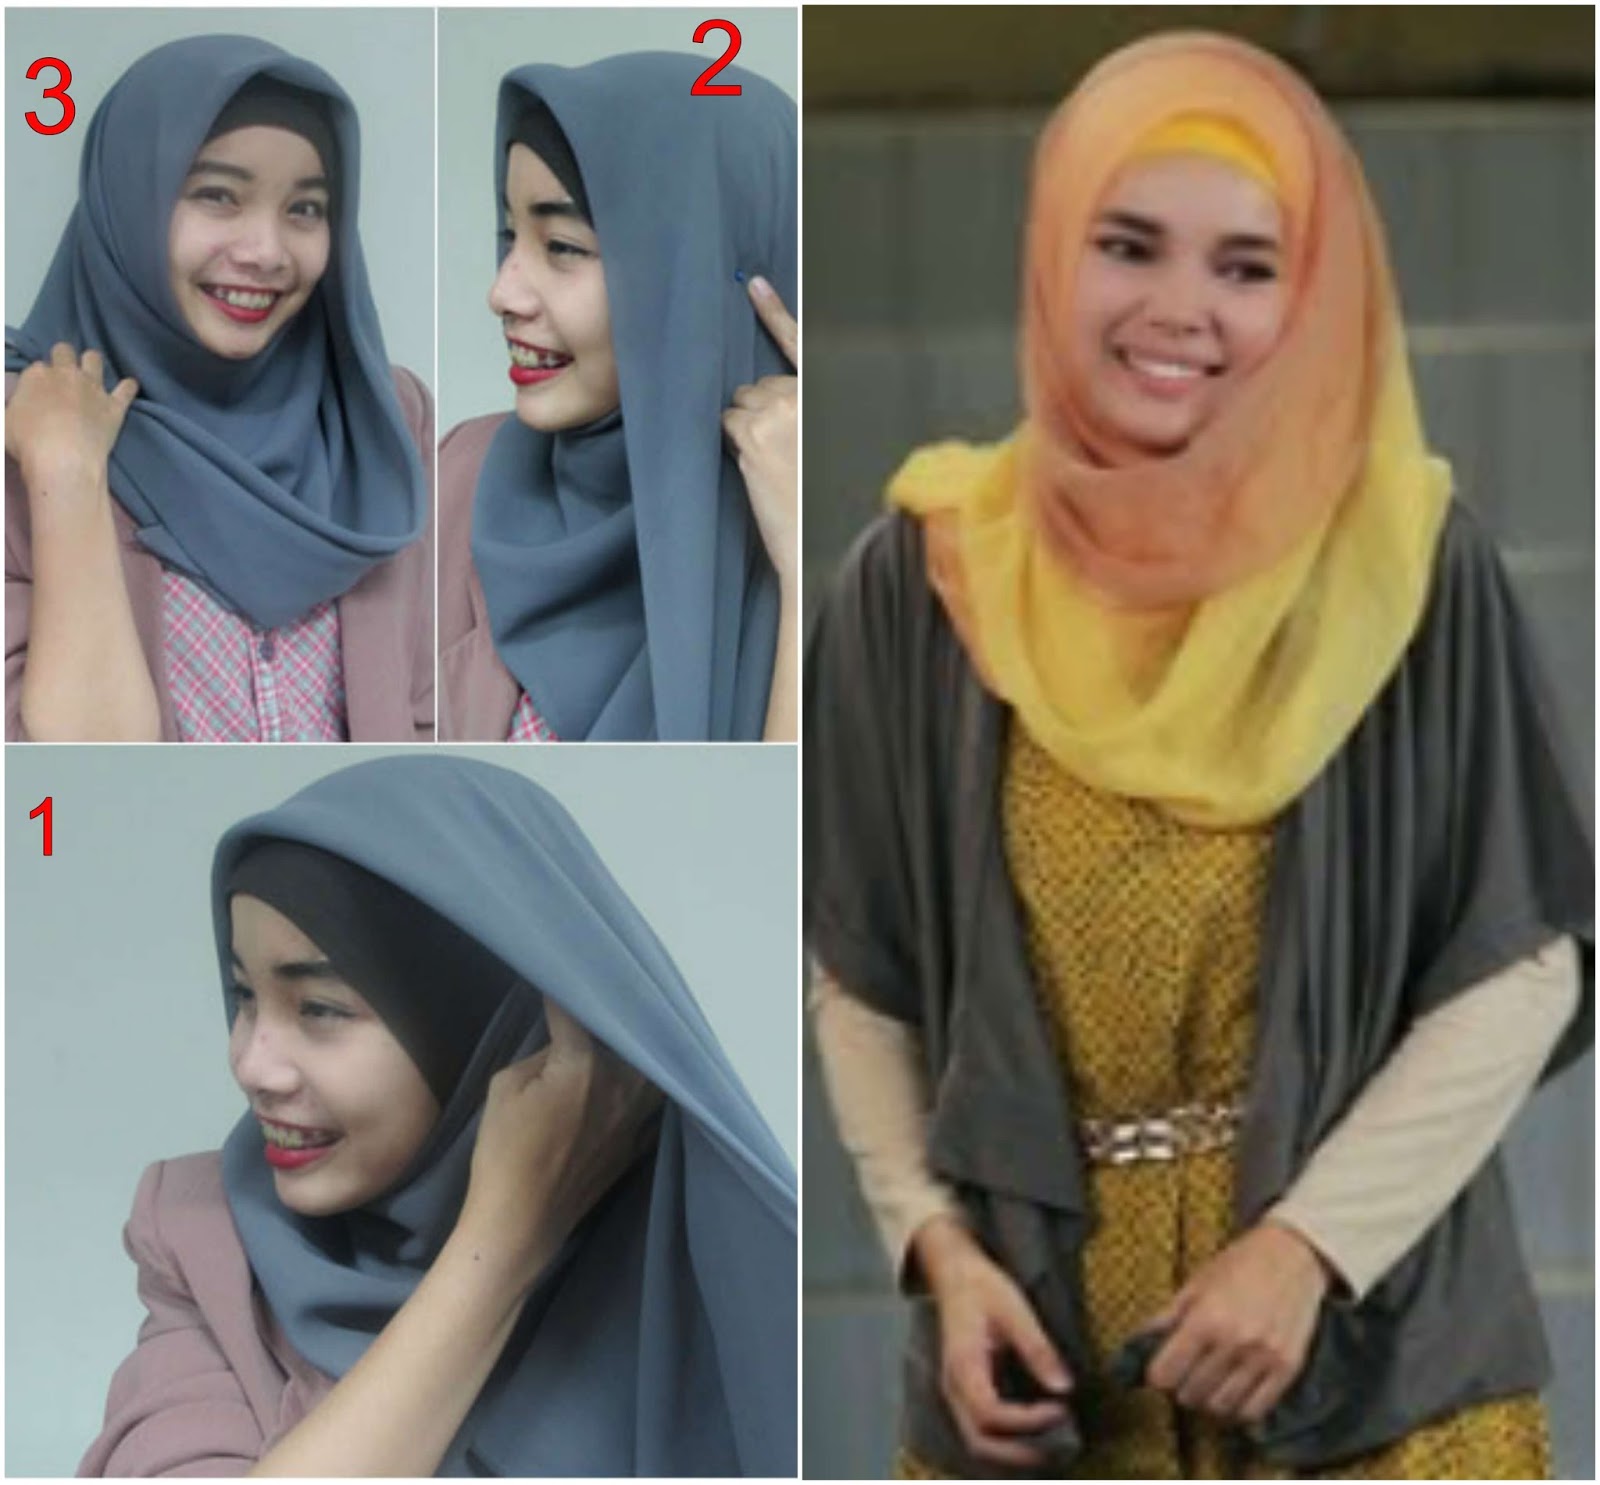 22 Tutorial Hijab Ala Dewi Sandra Vs Fatin Shidqia Favorit Mana